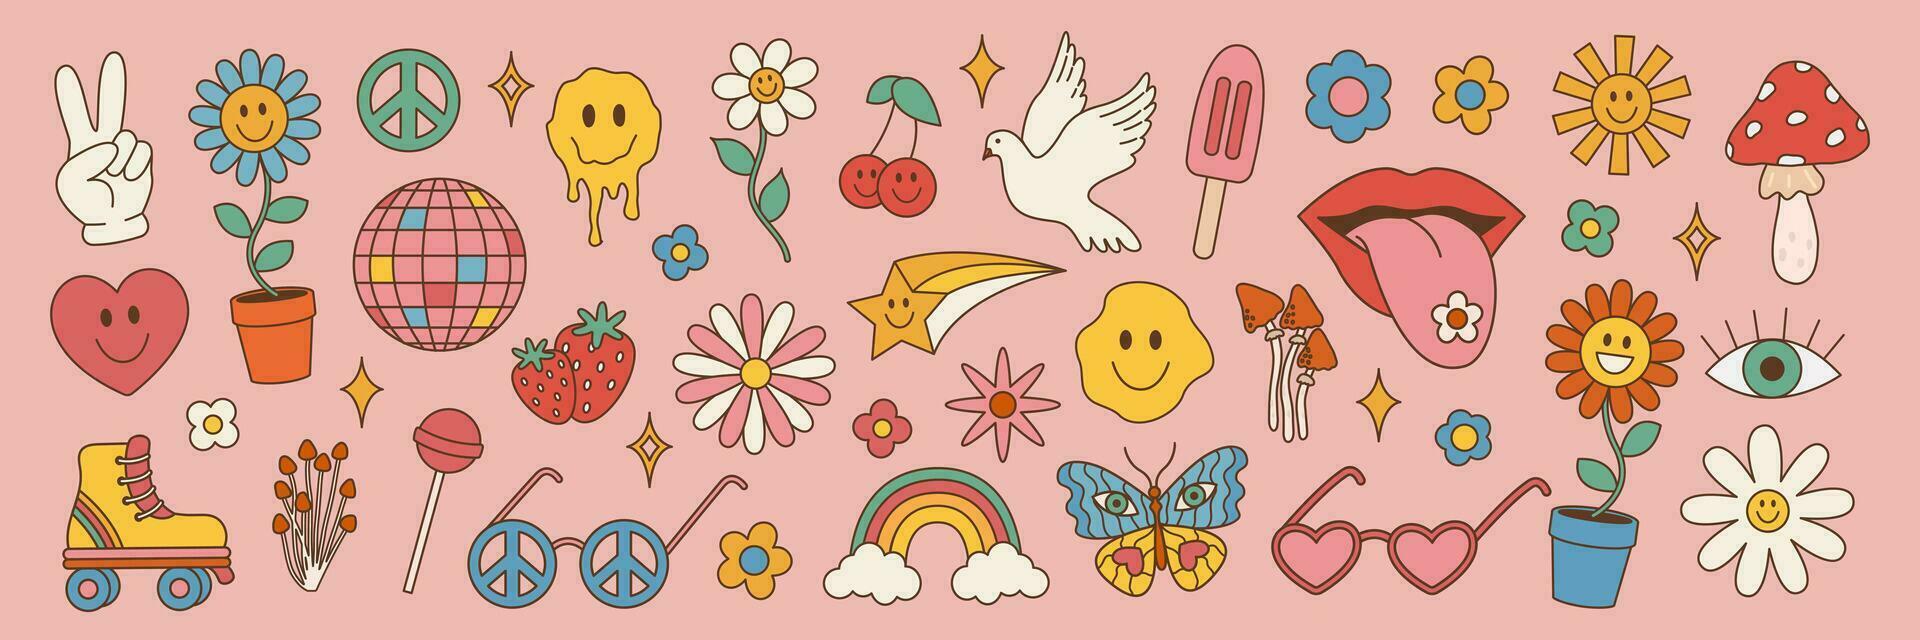 häftig hippie uppsättning av 70s 80s element. vektor illustration i årgång stil, blomma, regnbåge, hjärta, svamp